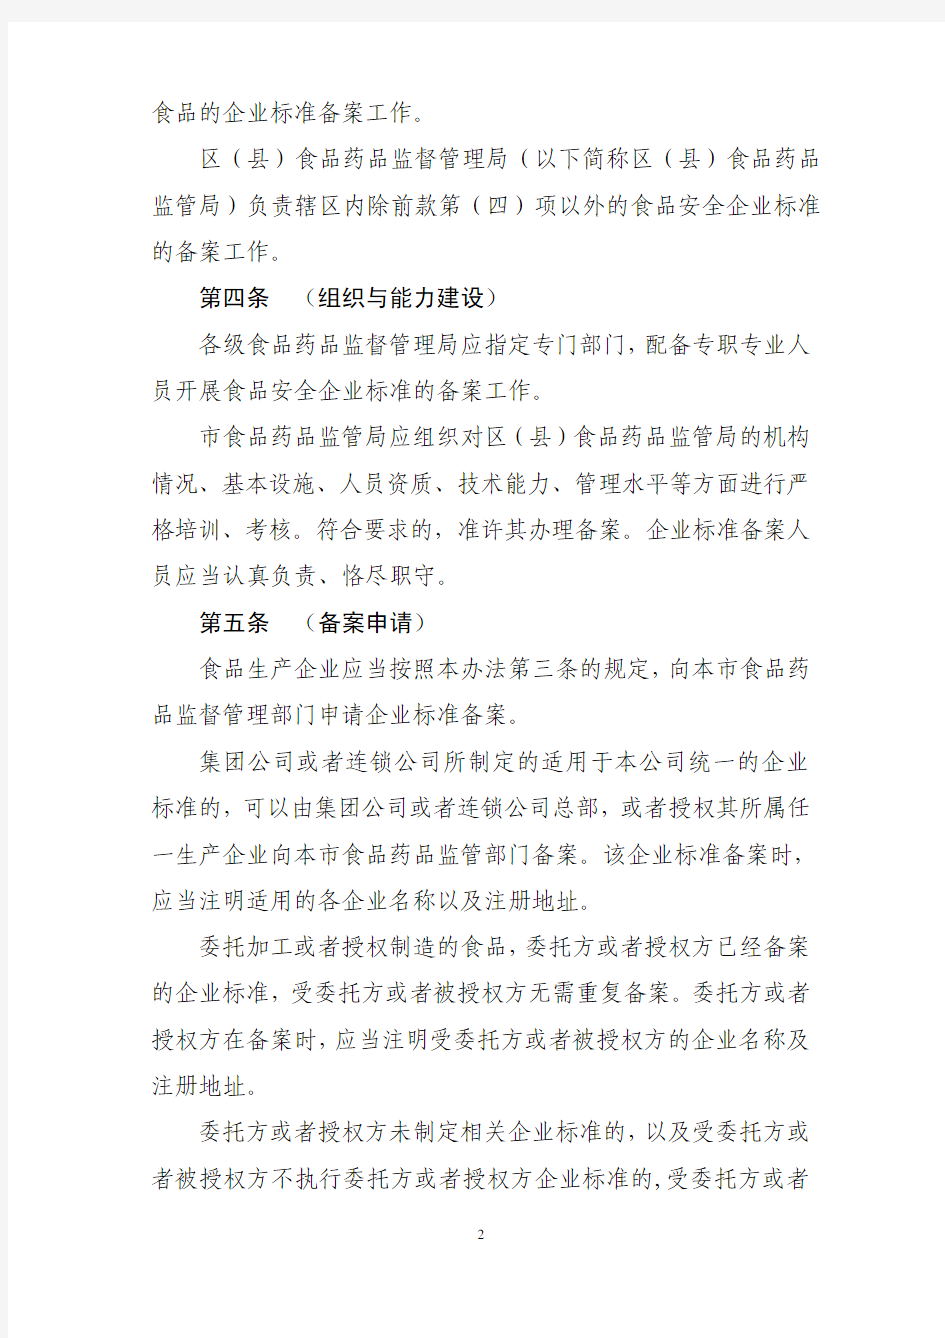 上海市食品安全企业标准管理办法